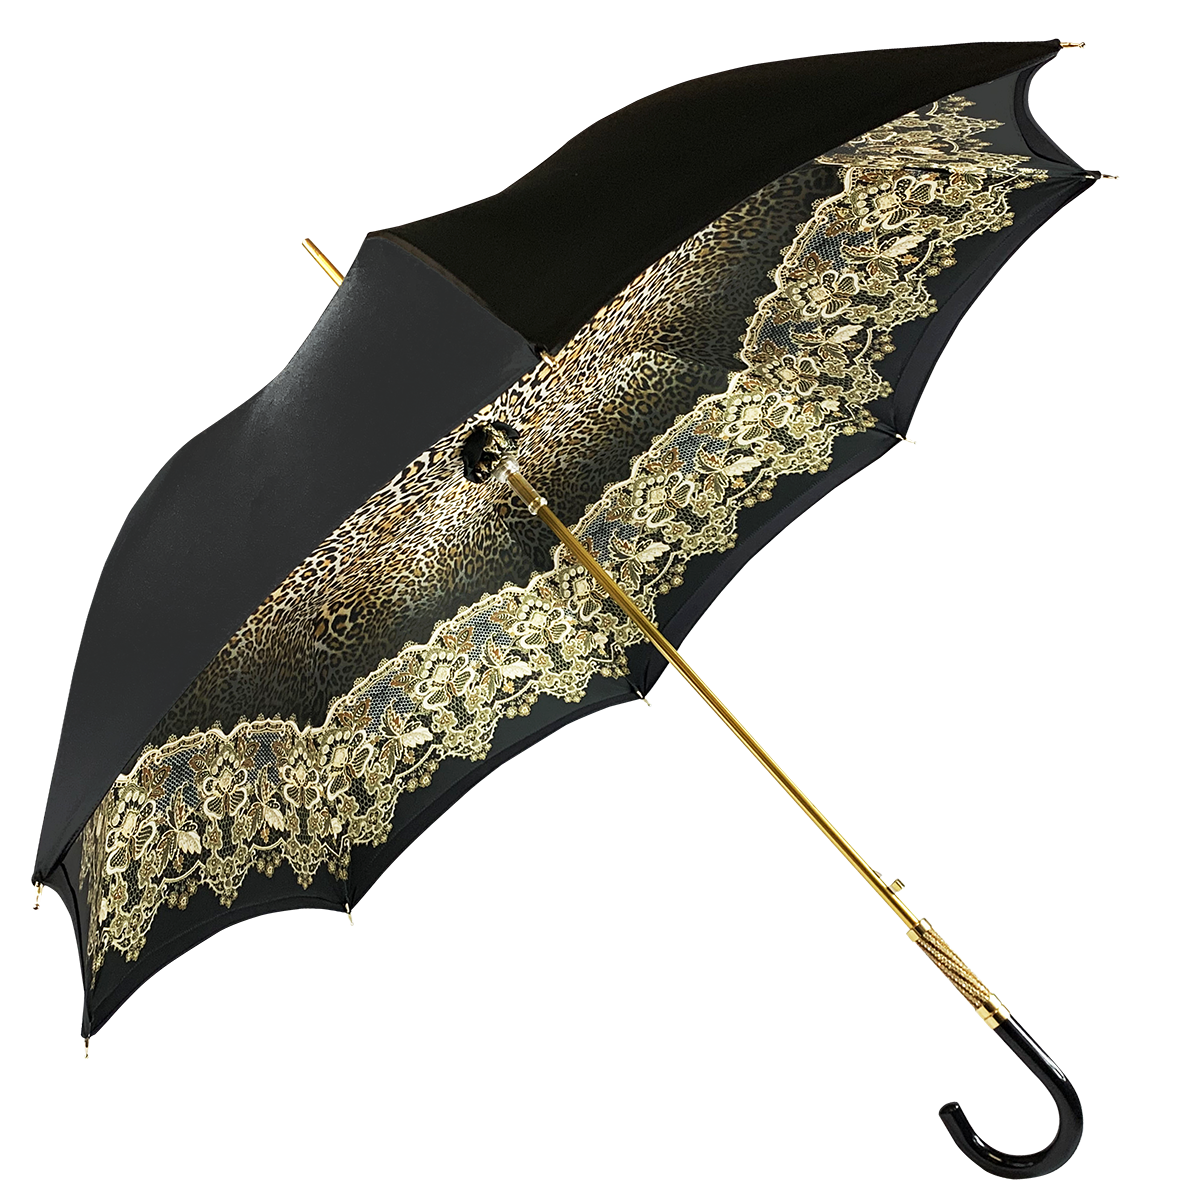 Simple and Elegant Black Umbrella with Animalier design